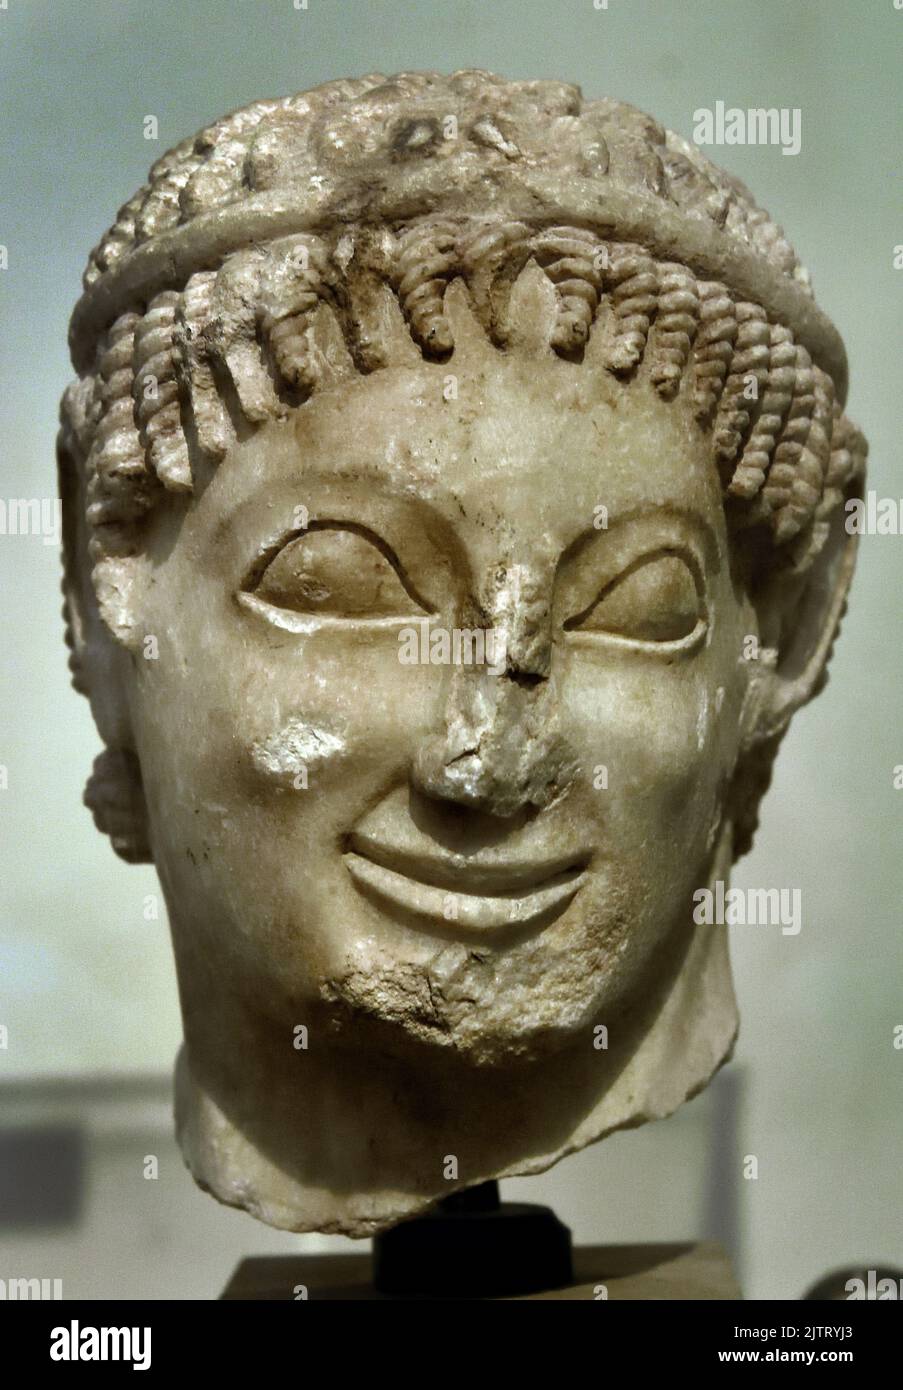 Jefe de una Juventud , pentecostal, encontrado en Eleusis, Ático, siglo 6th aC, Museo Arqueológico Nacional de Atenas, (probablemente pertenece a la estatua de un jinete, alrededor del año 560 a.C.). Foto de stock